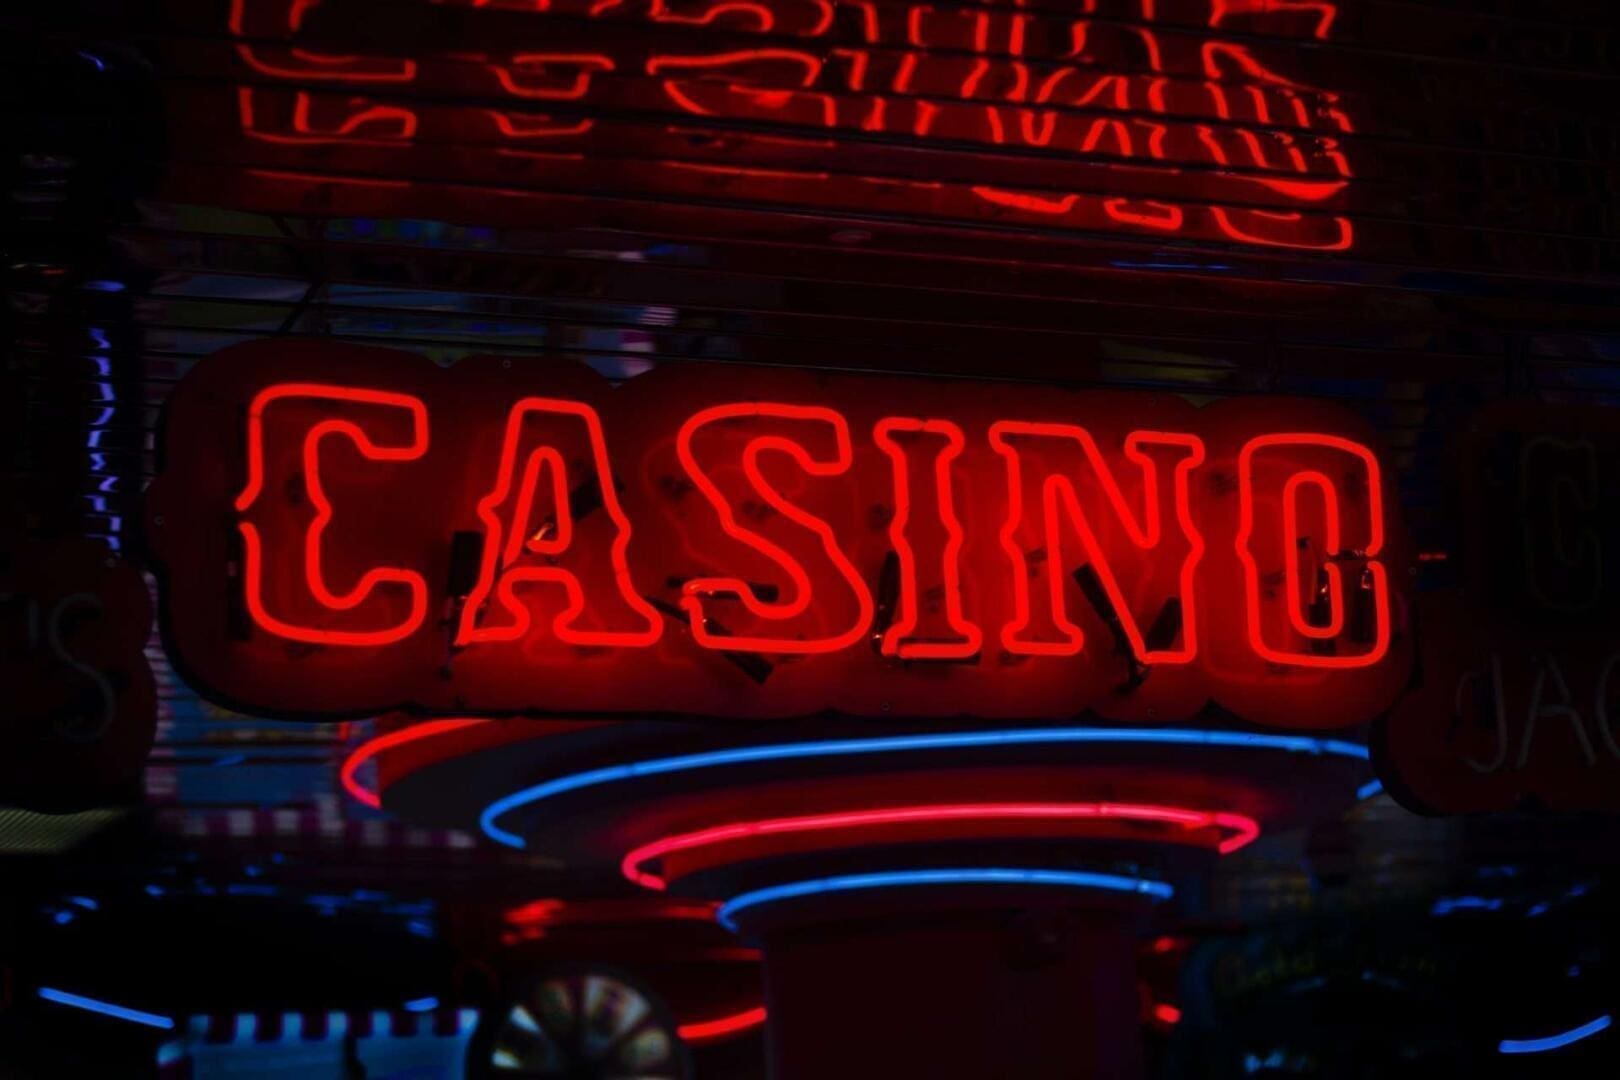 Casinos.